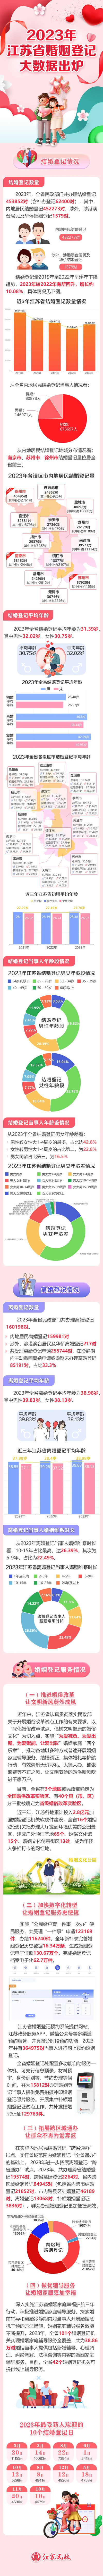 2023年江苏婚姻登记大数据出炉